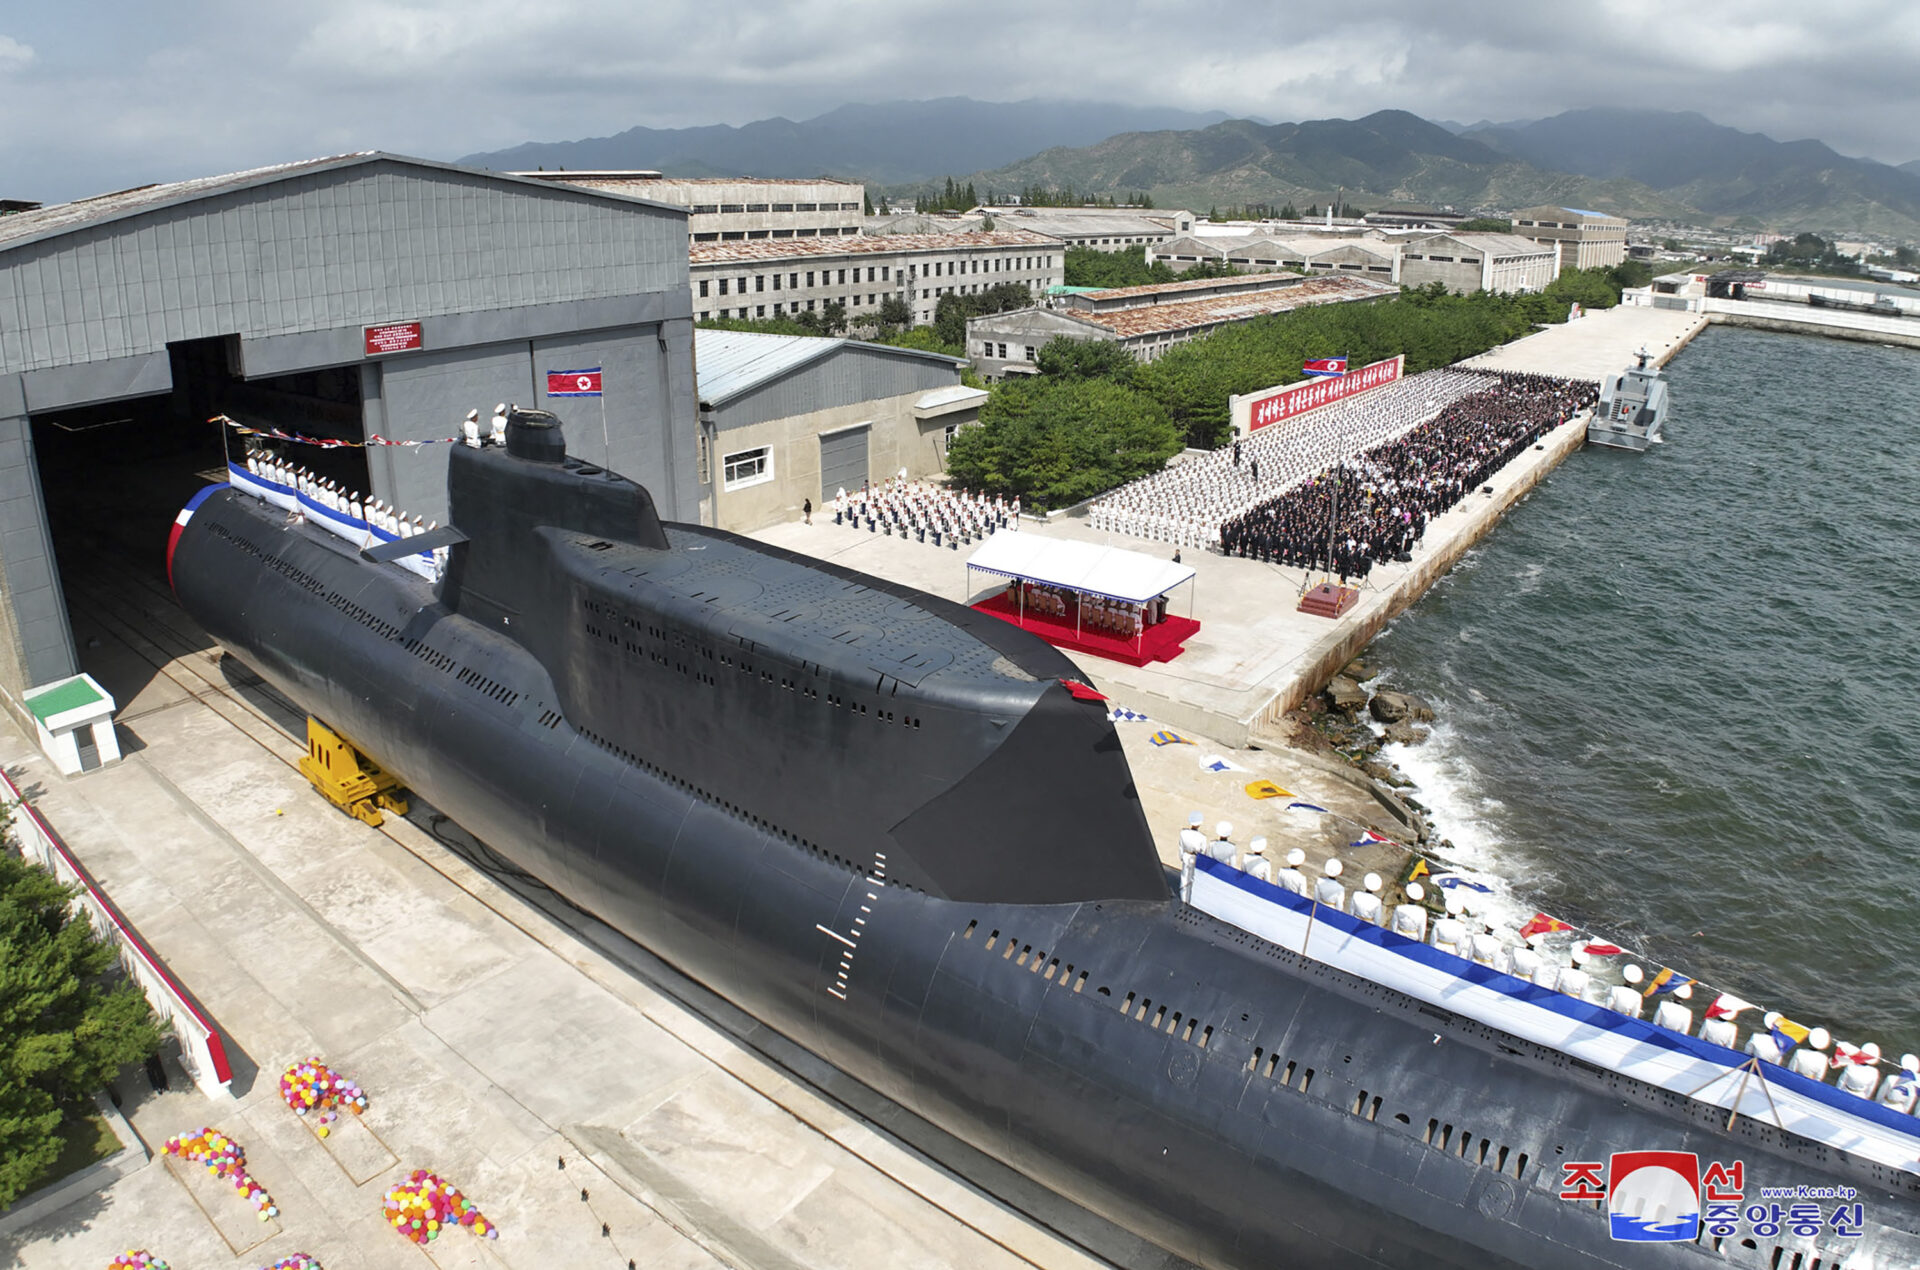 เกาหลีเหนือเปิดตัวเรือดำน้ำโจมตีนิวเคลียร์ทางยุทธวิธี